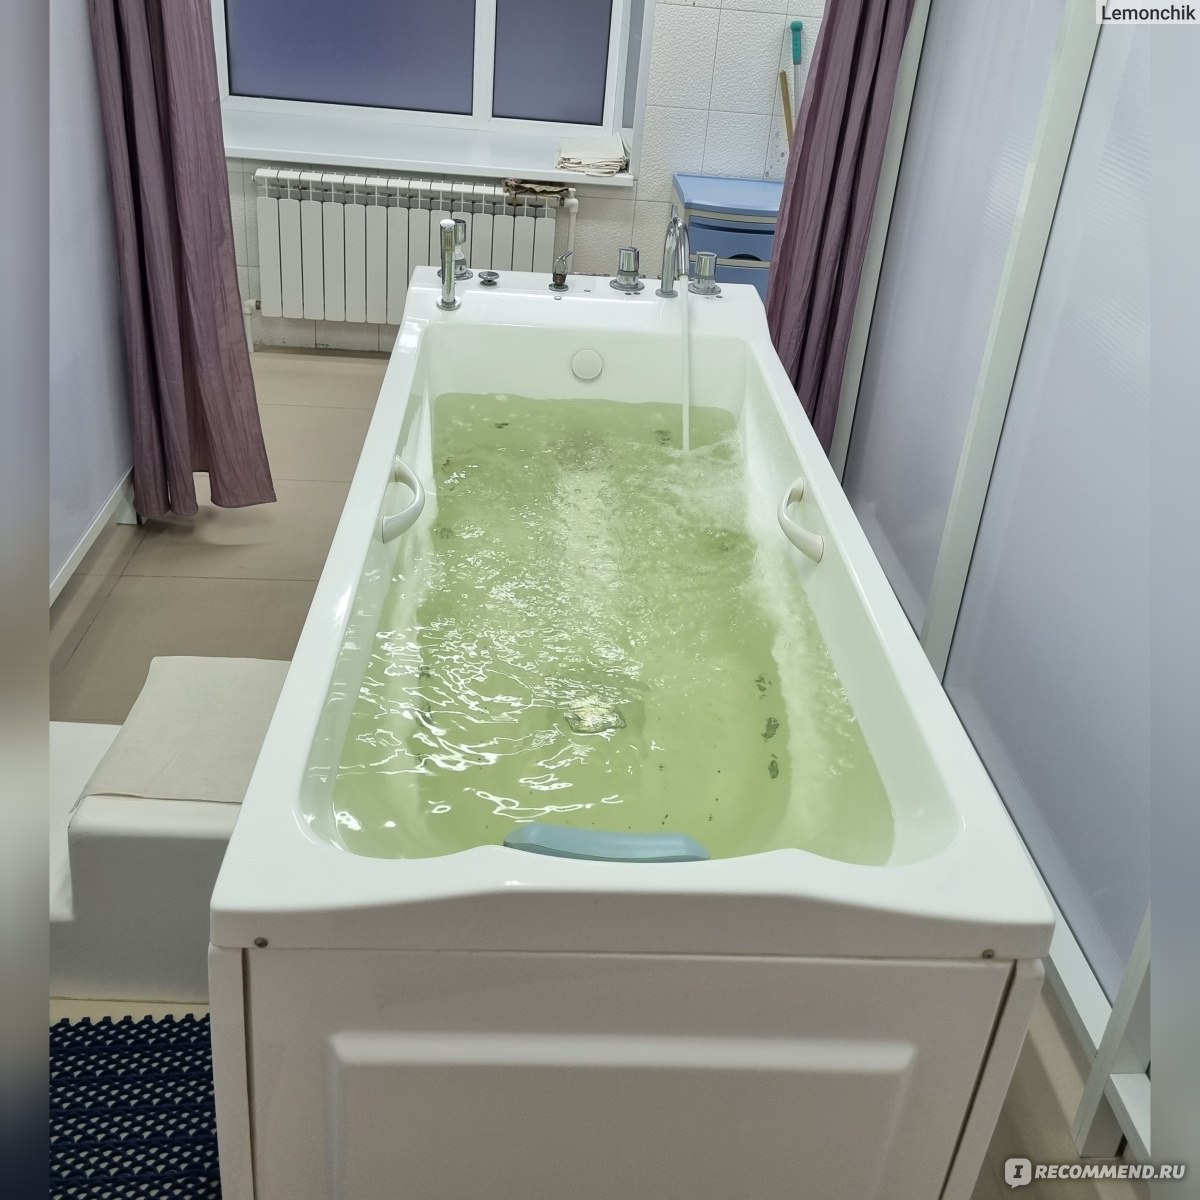 Гидромассажные ванны - каждодневные сеансы профессионального массажа, не выходя из дома!